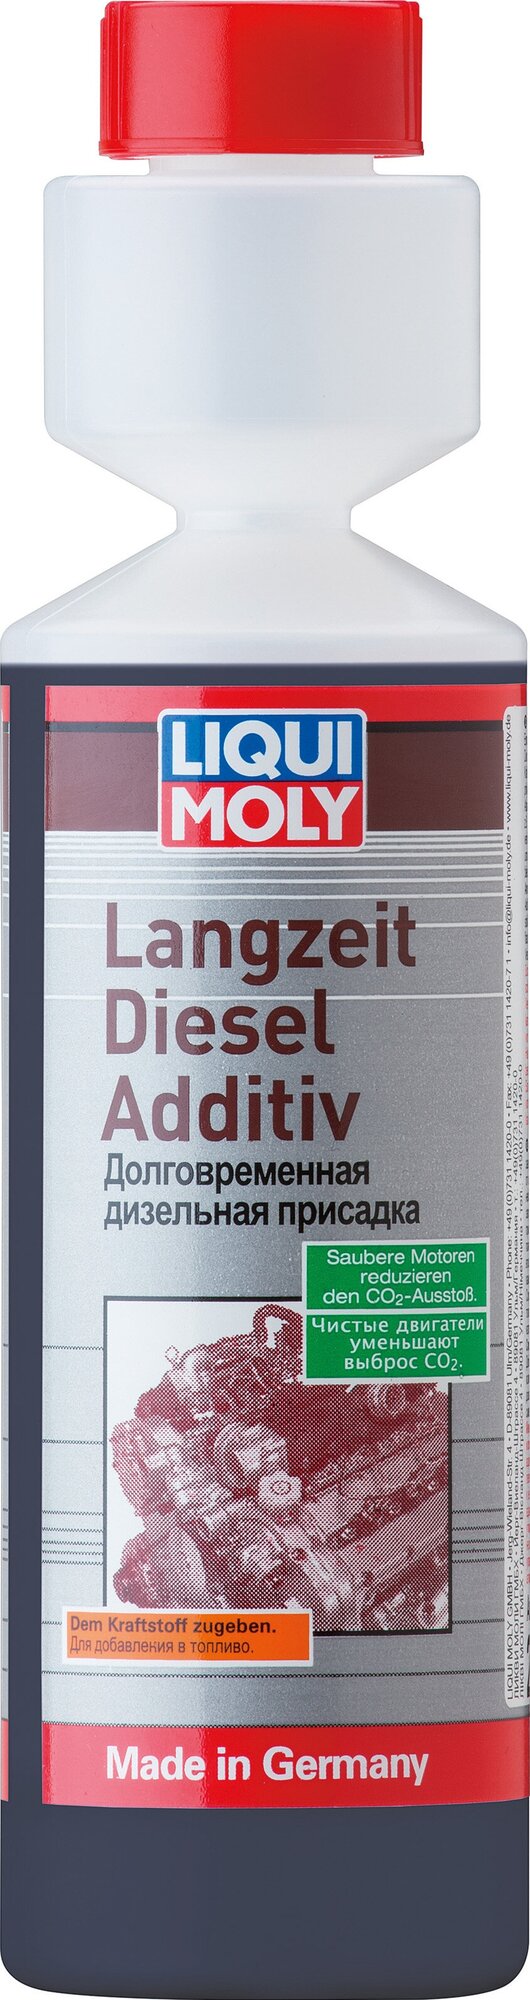 Присадка дизельная долговременная Langzeit Diesel Additiv (025л) Liqui Moly 2355